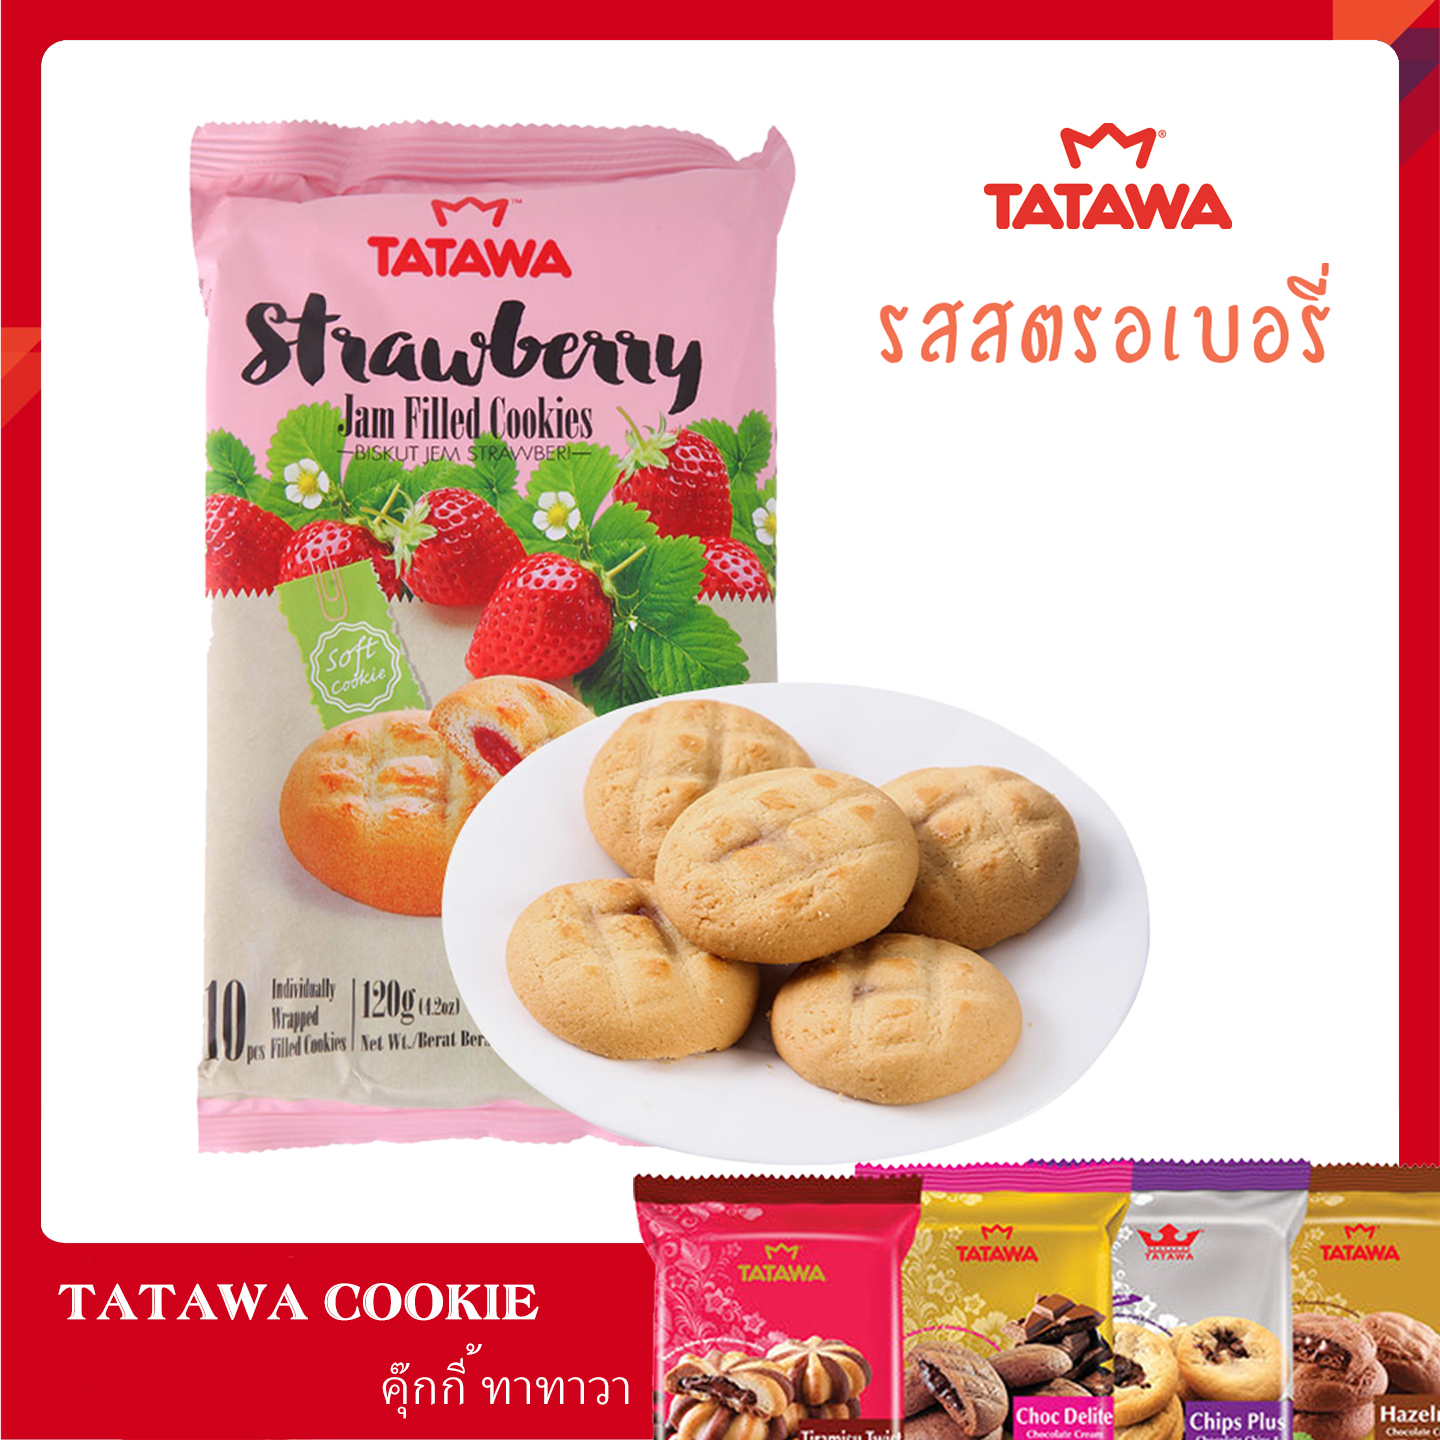 (รส Strawberry)  คุกกี้ TATAWA คุกกี้นิ่มสอดไส้หลายรส หอม อร่อย บรรจุ 10 ชิ้น ขนาด 120 กรัม